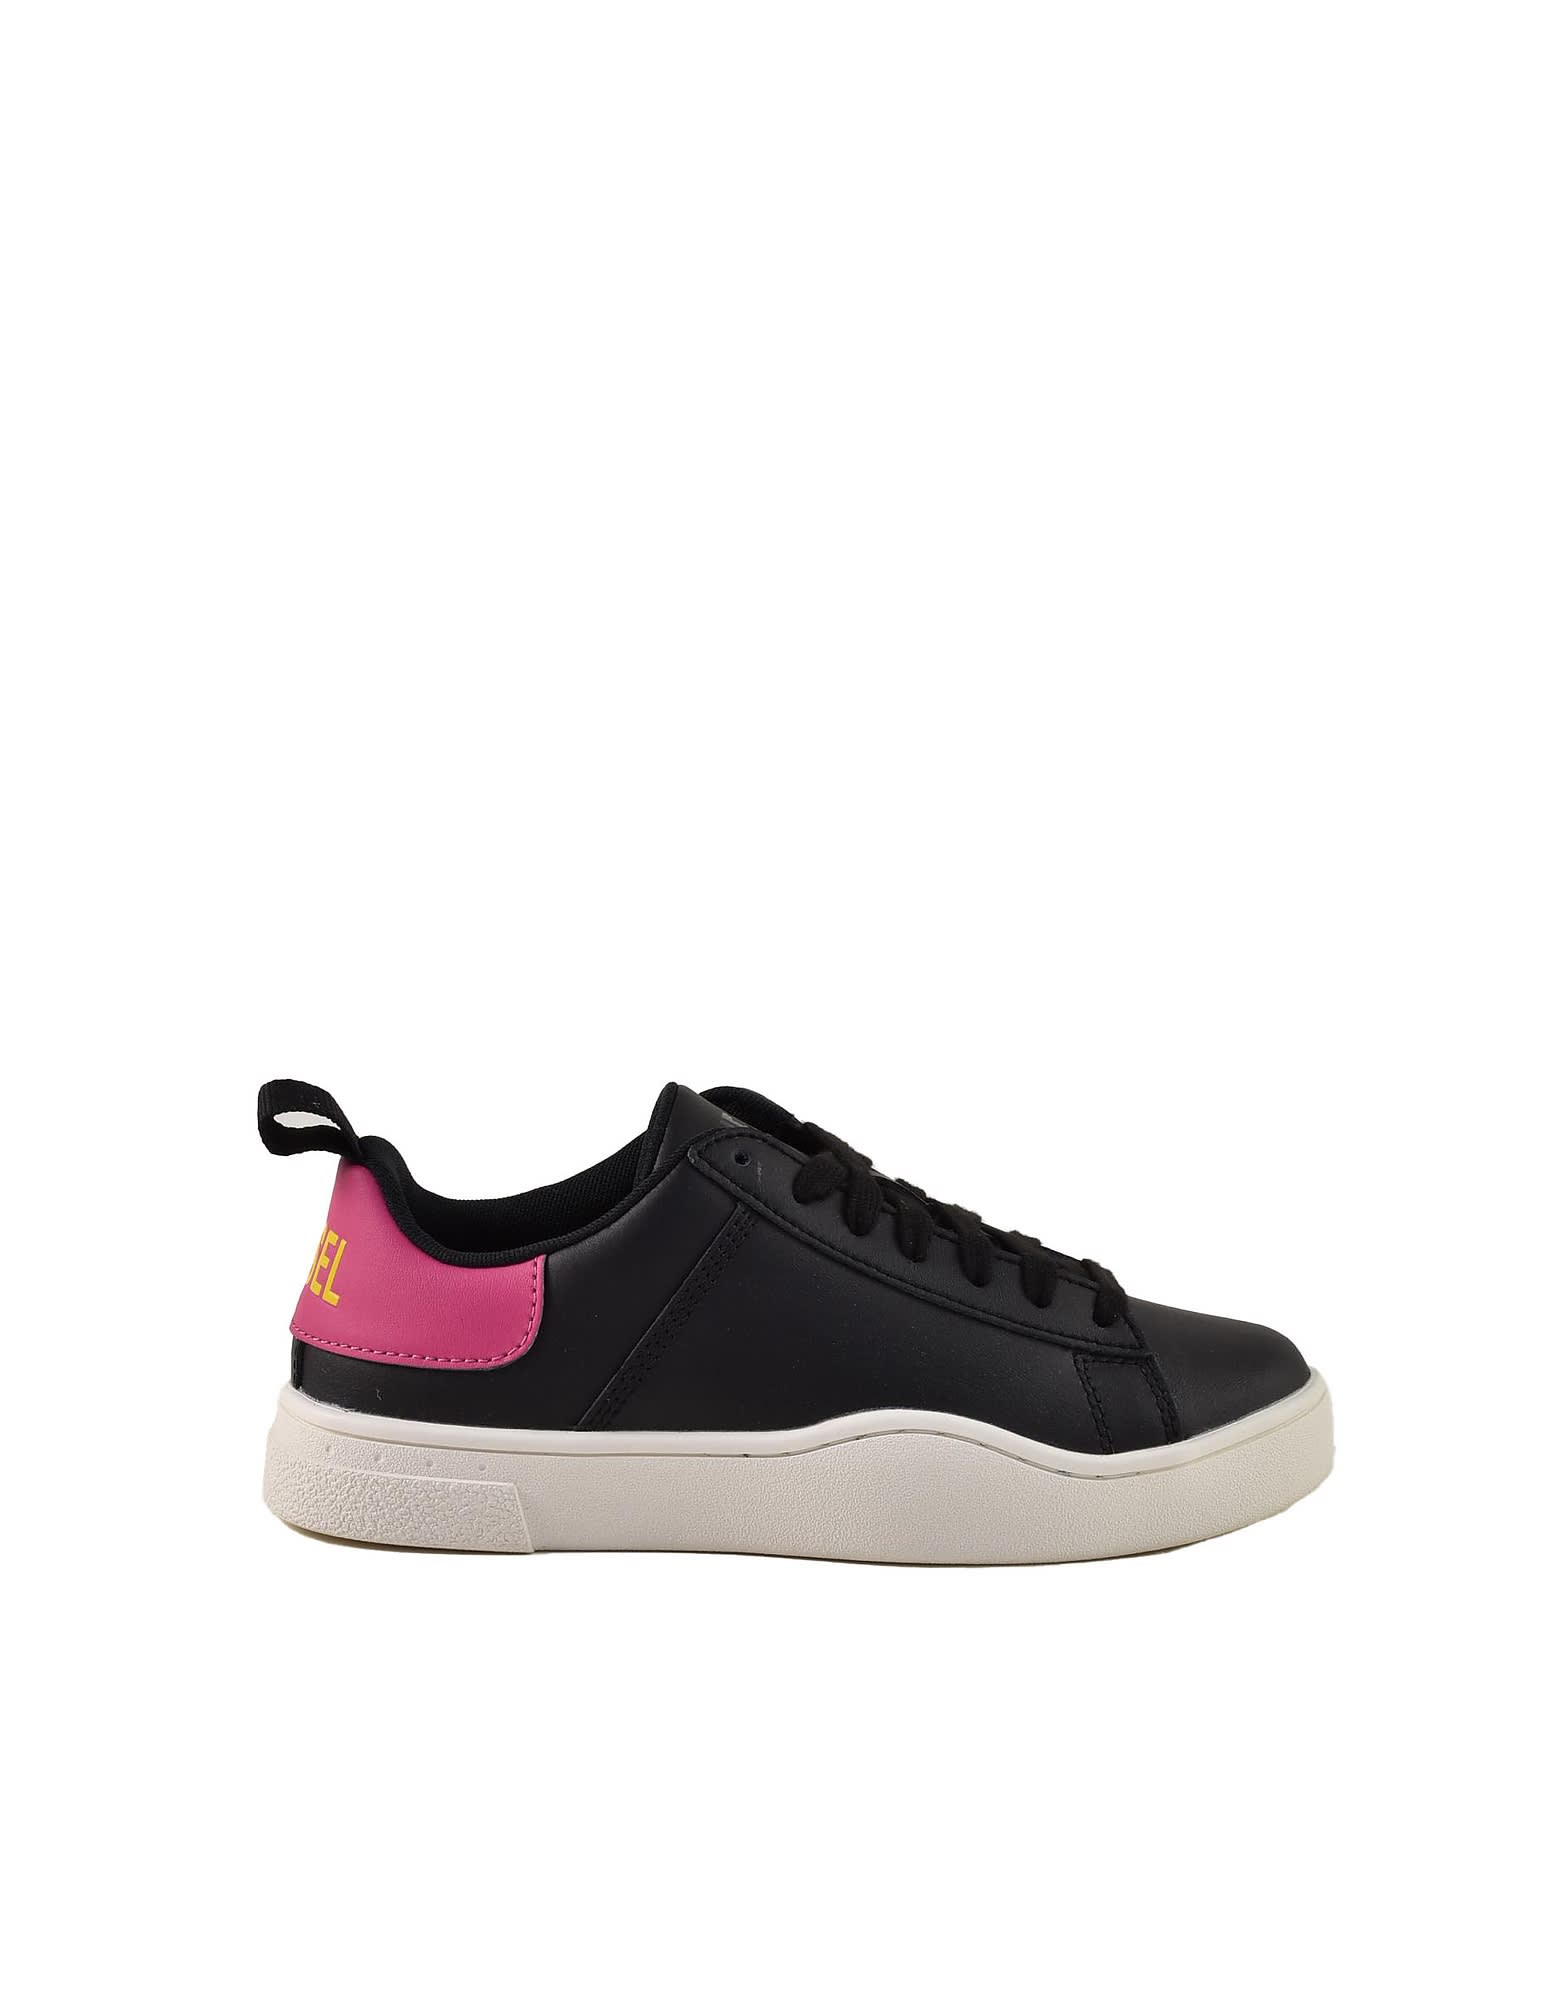 Diesel Womens Black / Pink Sneakers